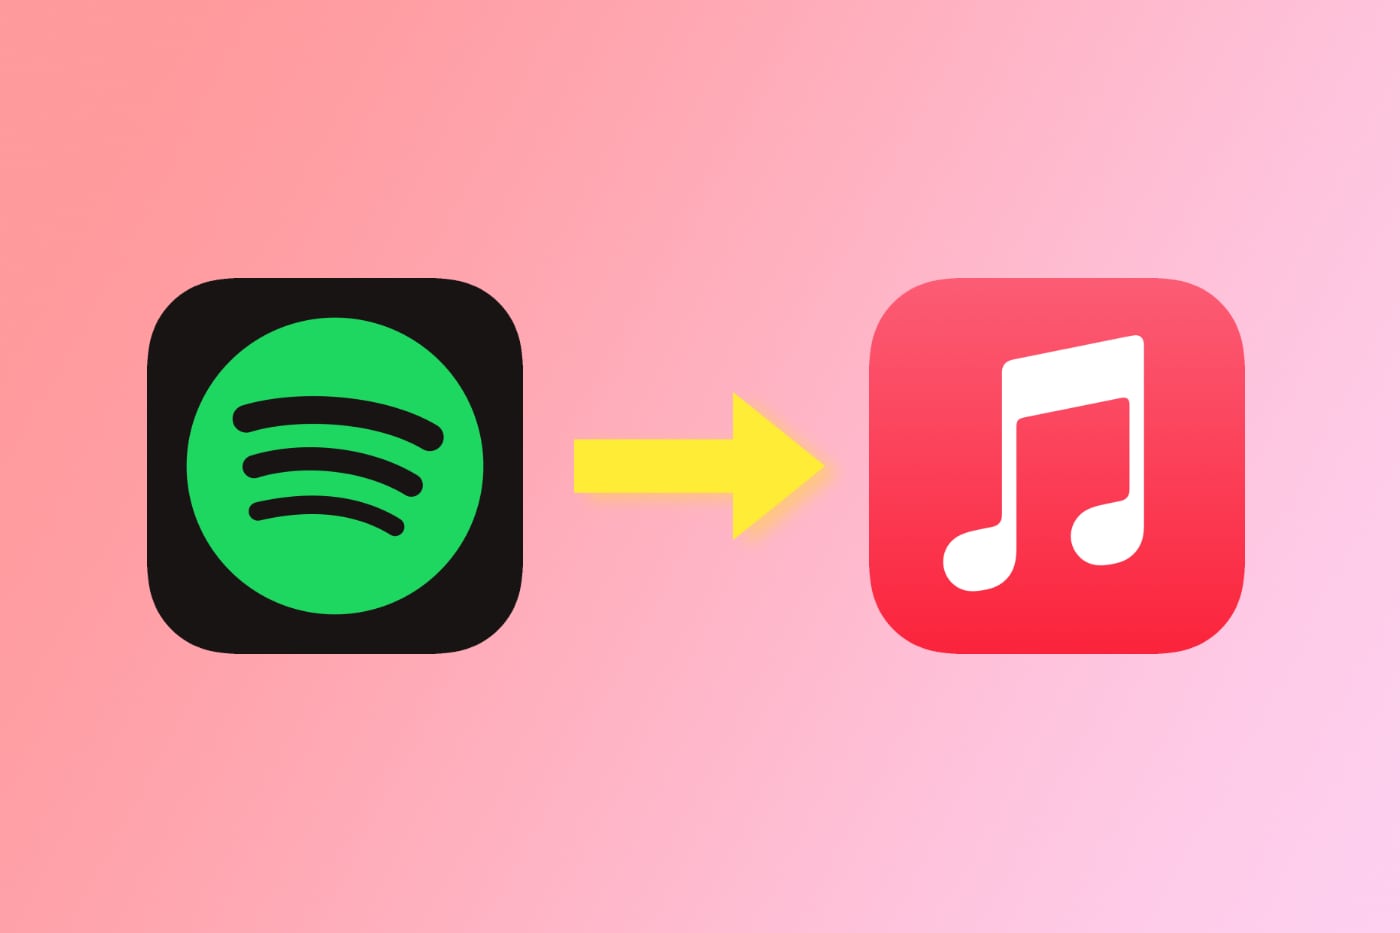 Бесплатное расширение MusicMatch для Safari открывает ссылки Spotify в Apple Music